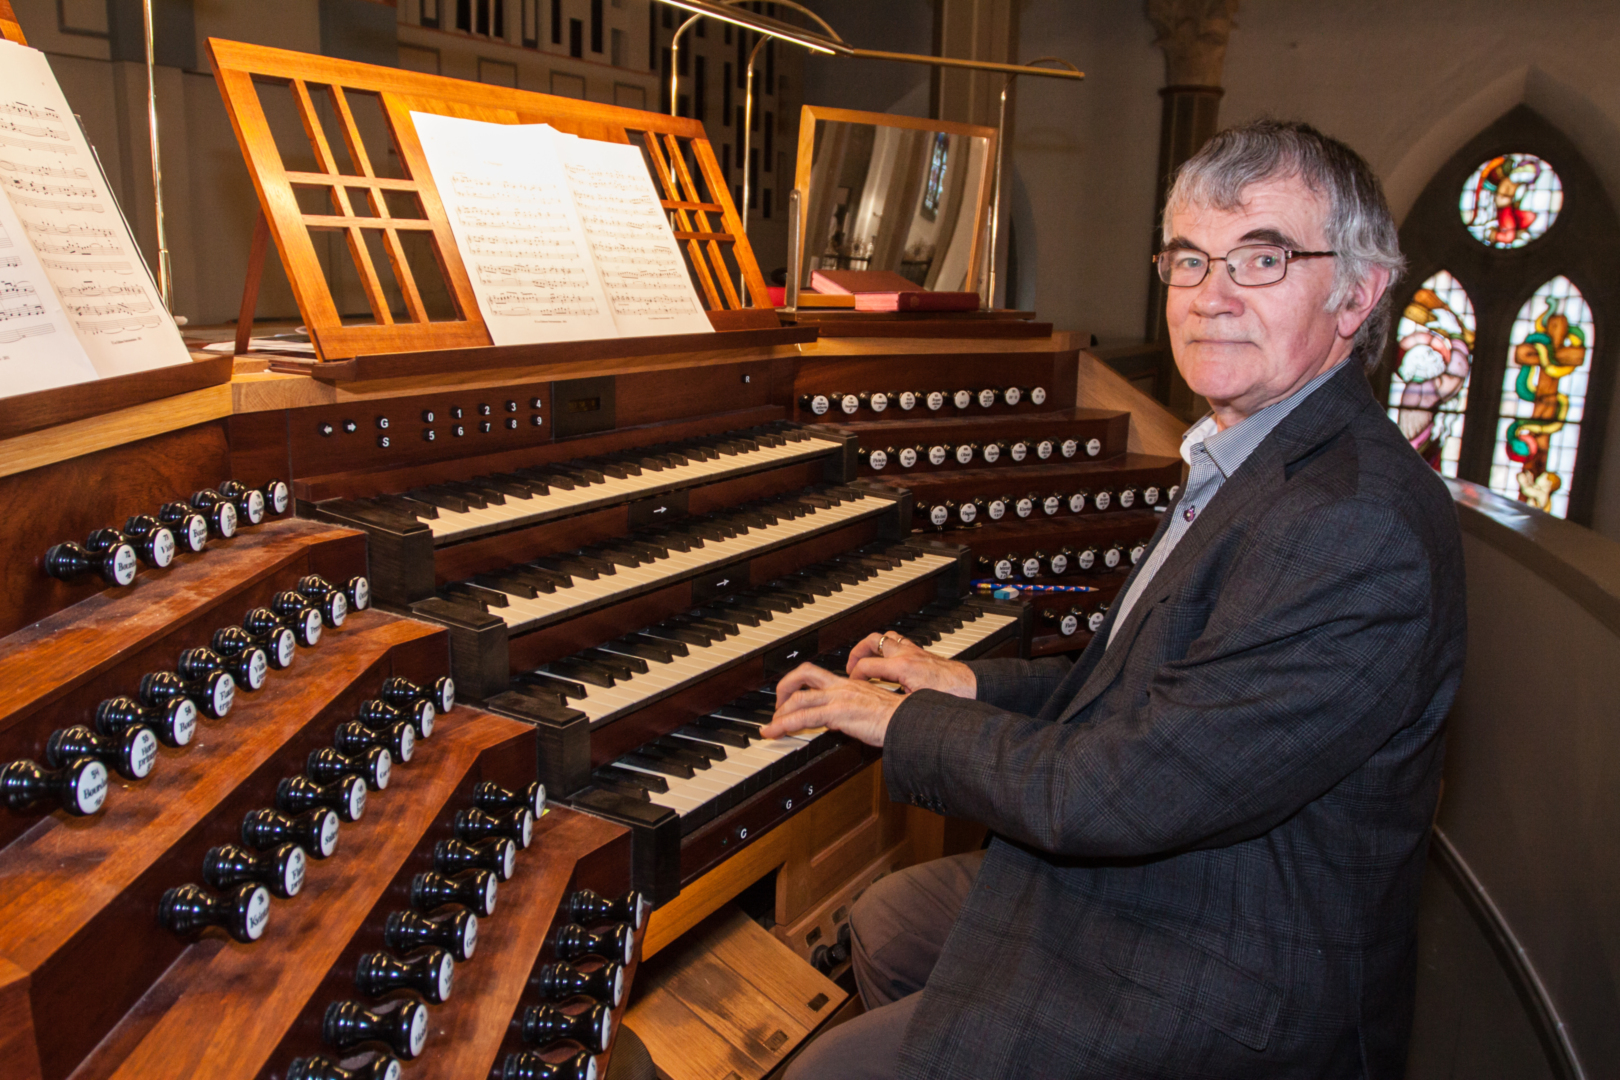 Da domkantor Arne Rodvelt Olsen i Tønsberg fikk nytt orgel, bestemte han seg for å fornye seg selv også. Nå strømmer publikum til kirken hver onsdag.